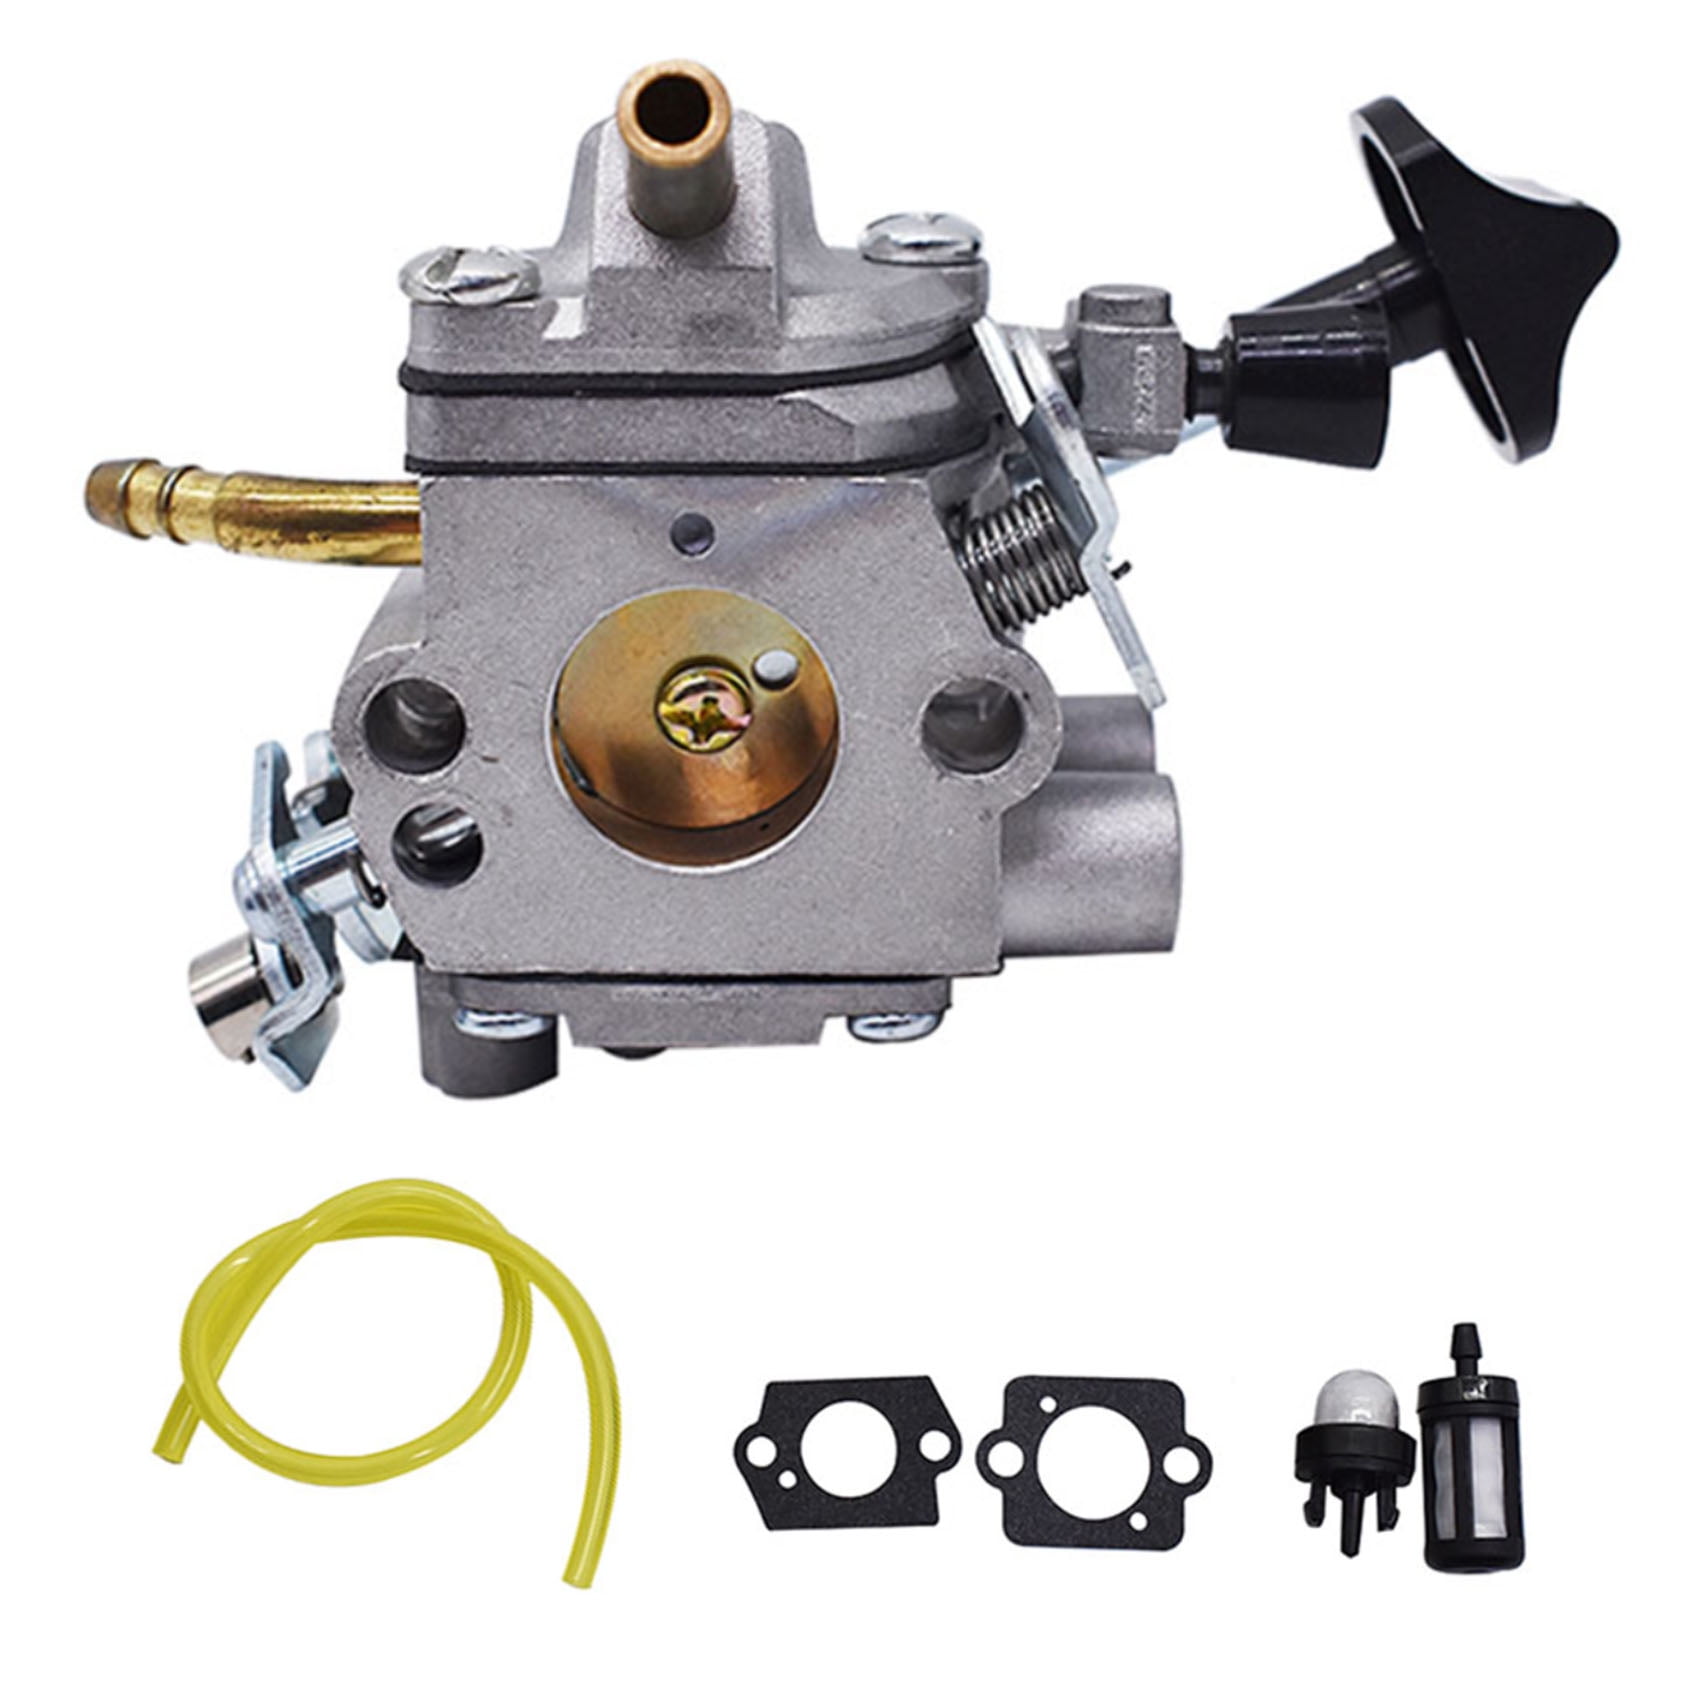 4282-120-0607 Carburetor kit for Stihl BR500 BR550 BR600 Backpack Blower 